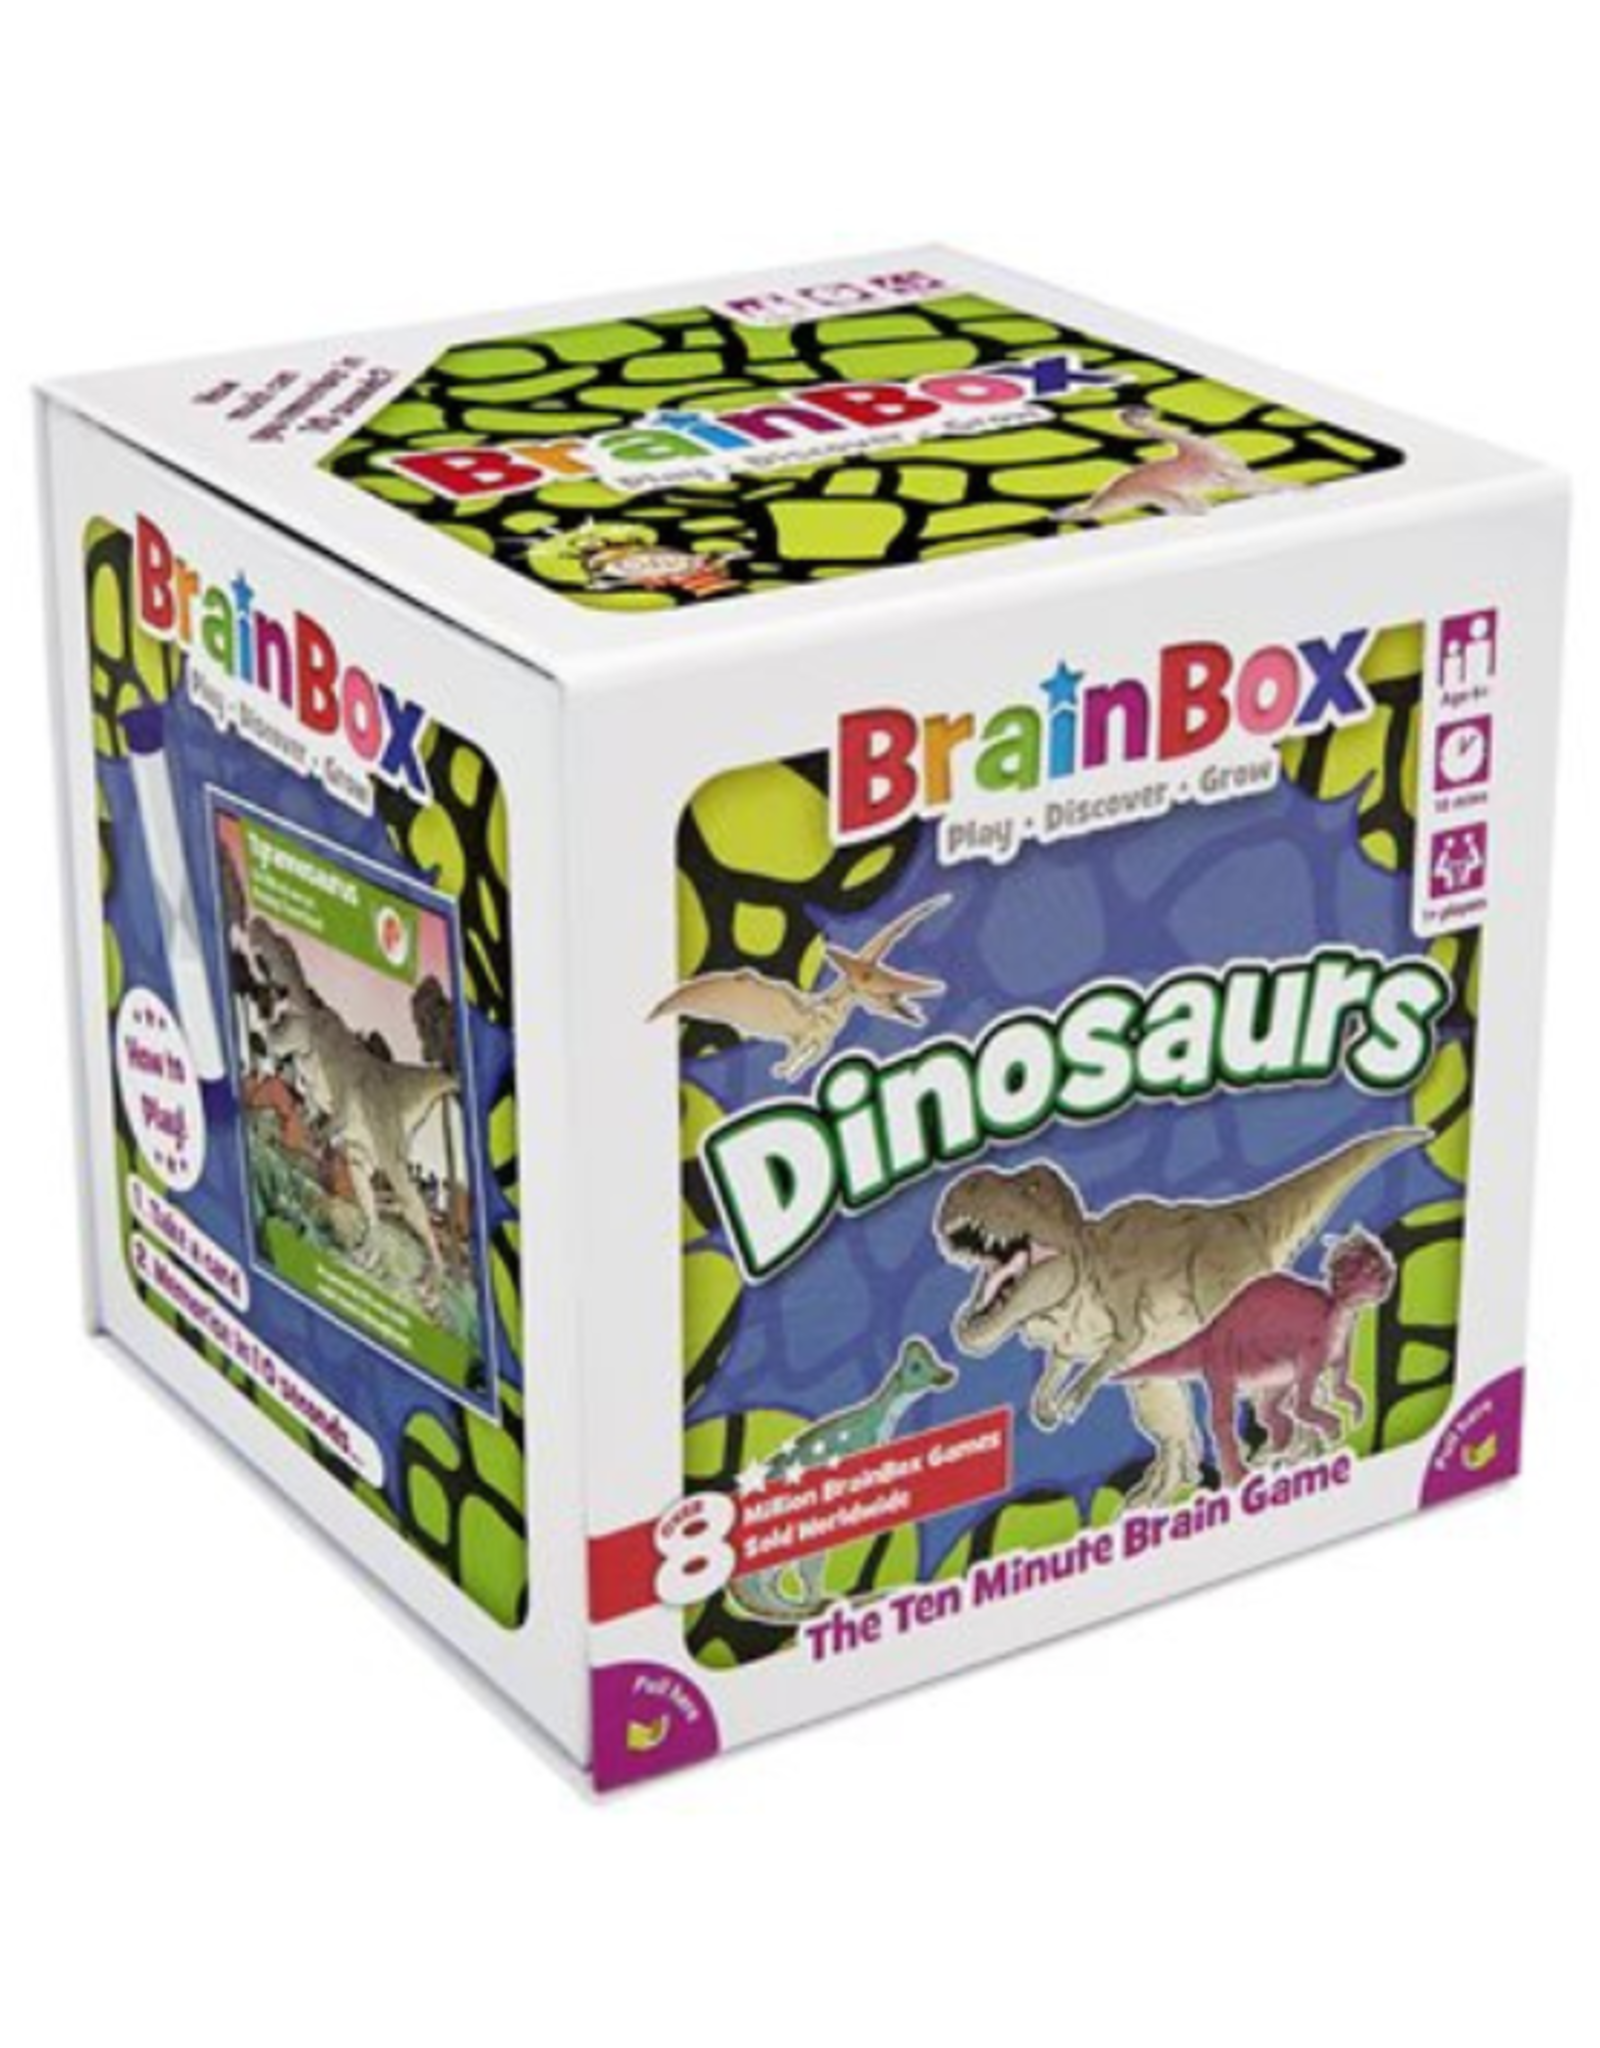 Bezzer Wizzer Studio - Brainbox: Dinosaurs